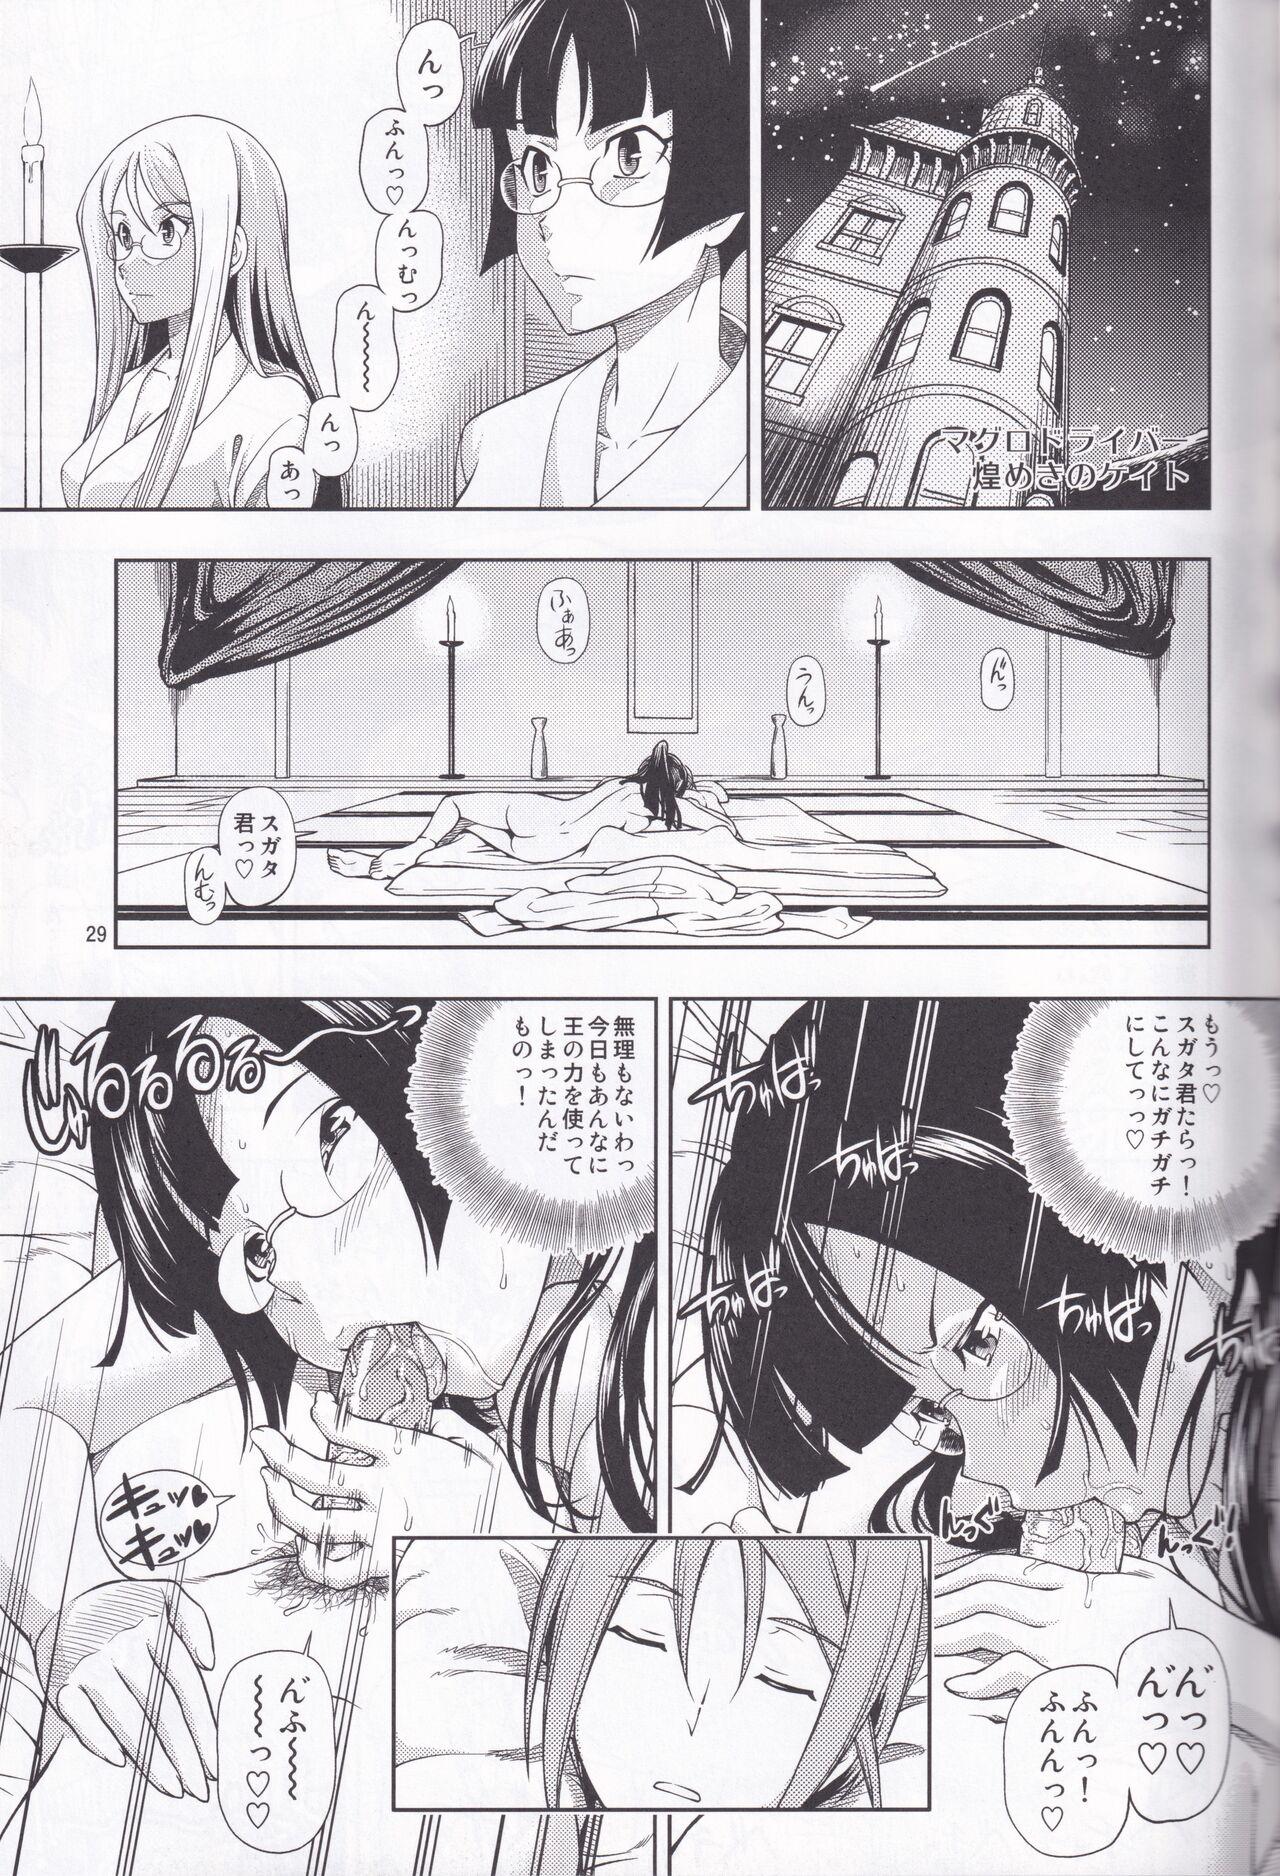 Kensou Ogawa Omake Manga Collection 27